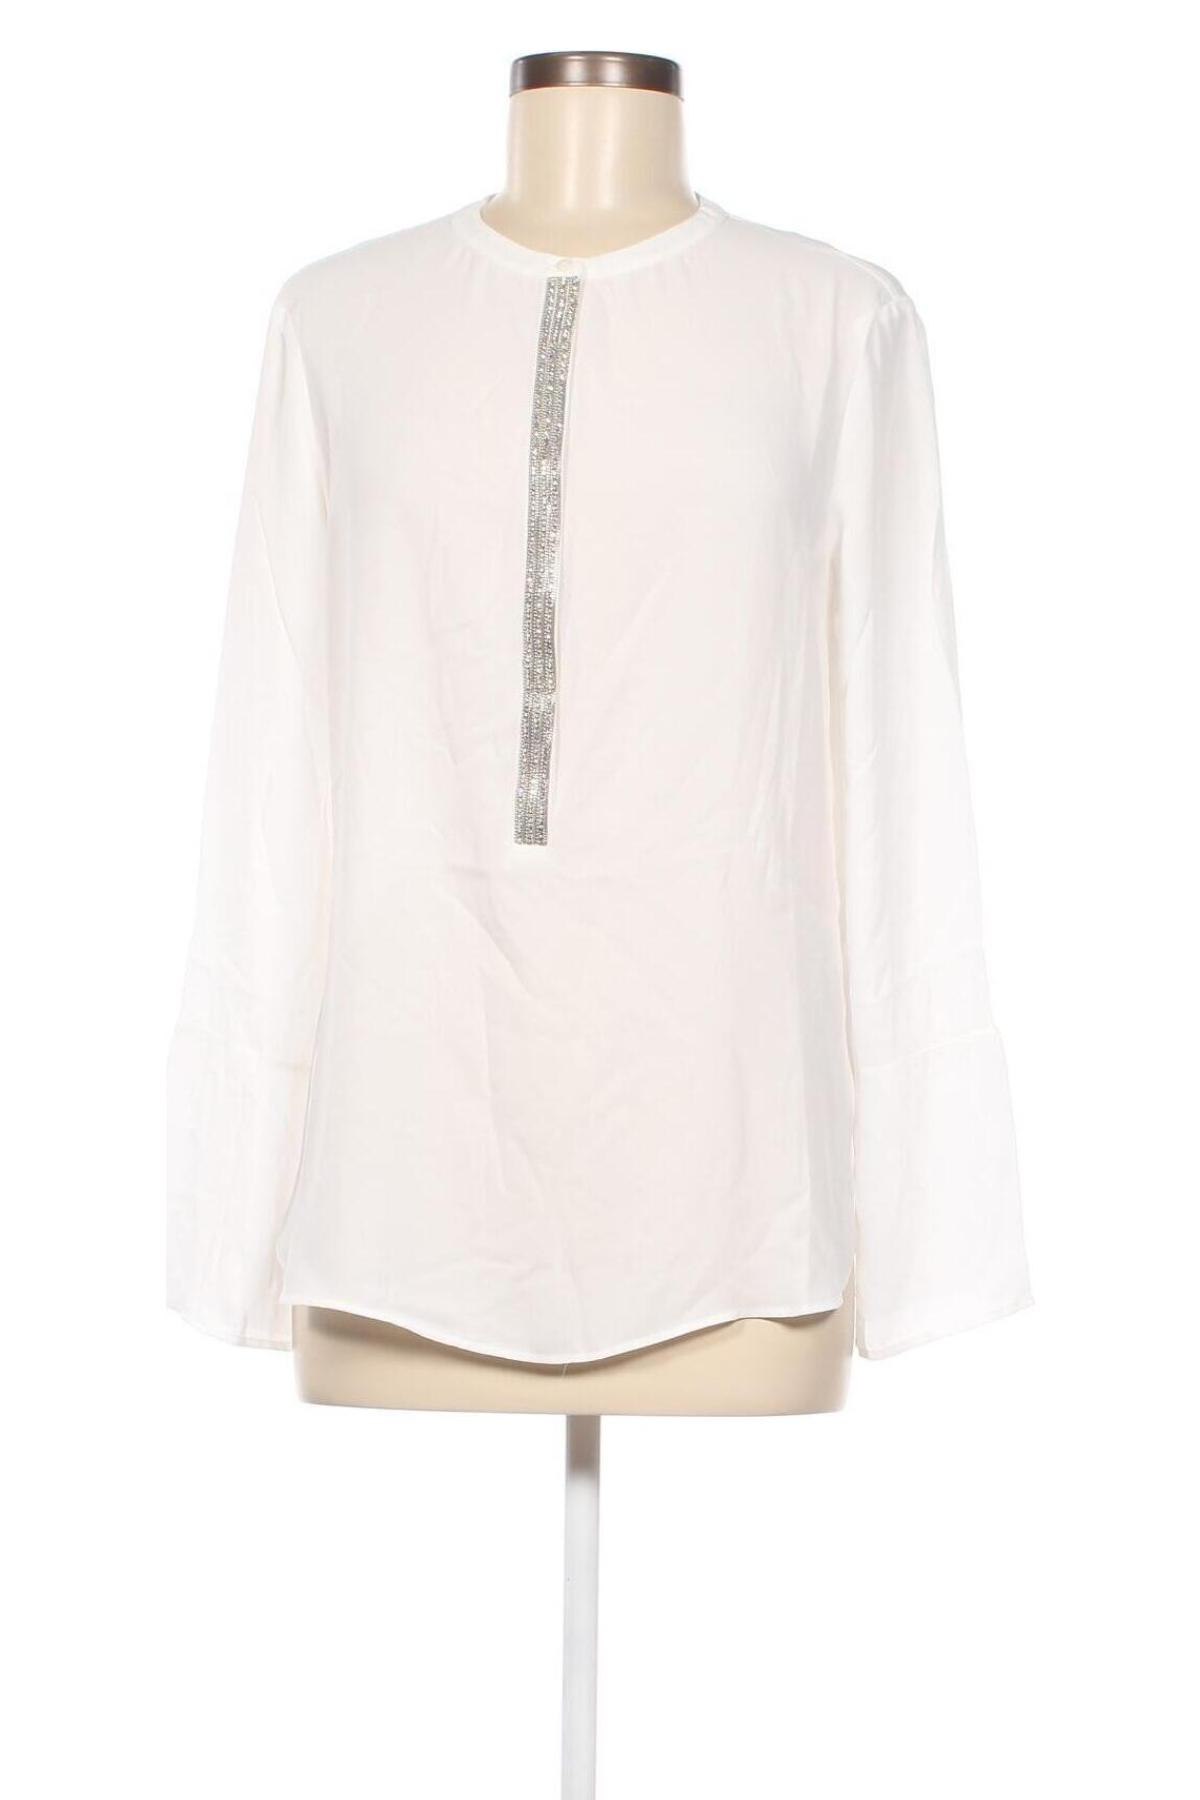 Γυναικεία μπλούζα S.Oliver Black Label, Μέγεθος M, Χρώμα Λευκό, Πολυεστέρας, Τιμή 28,10 €